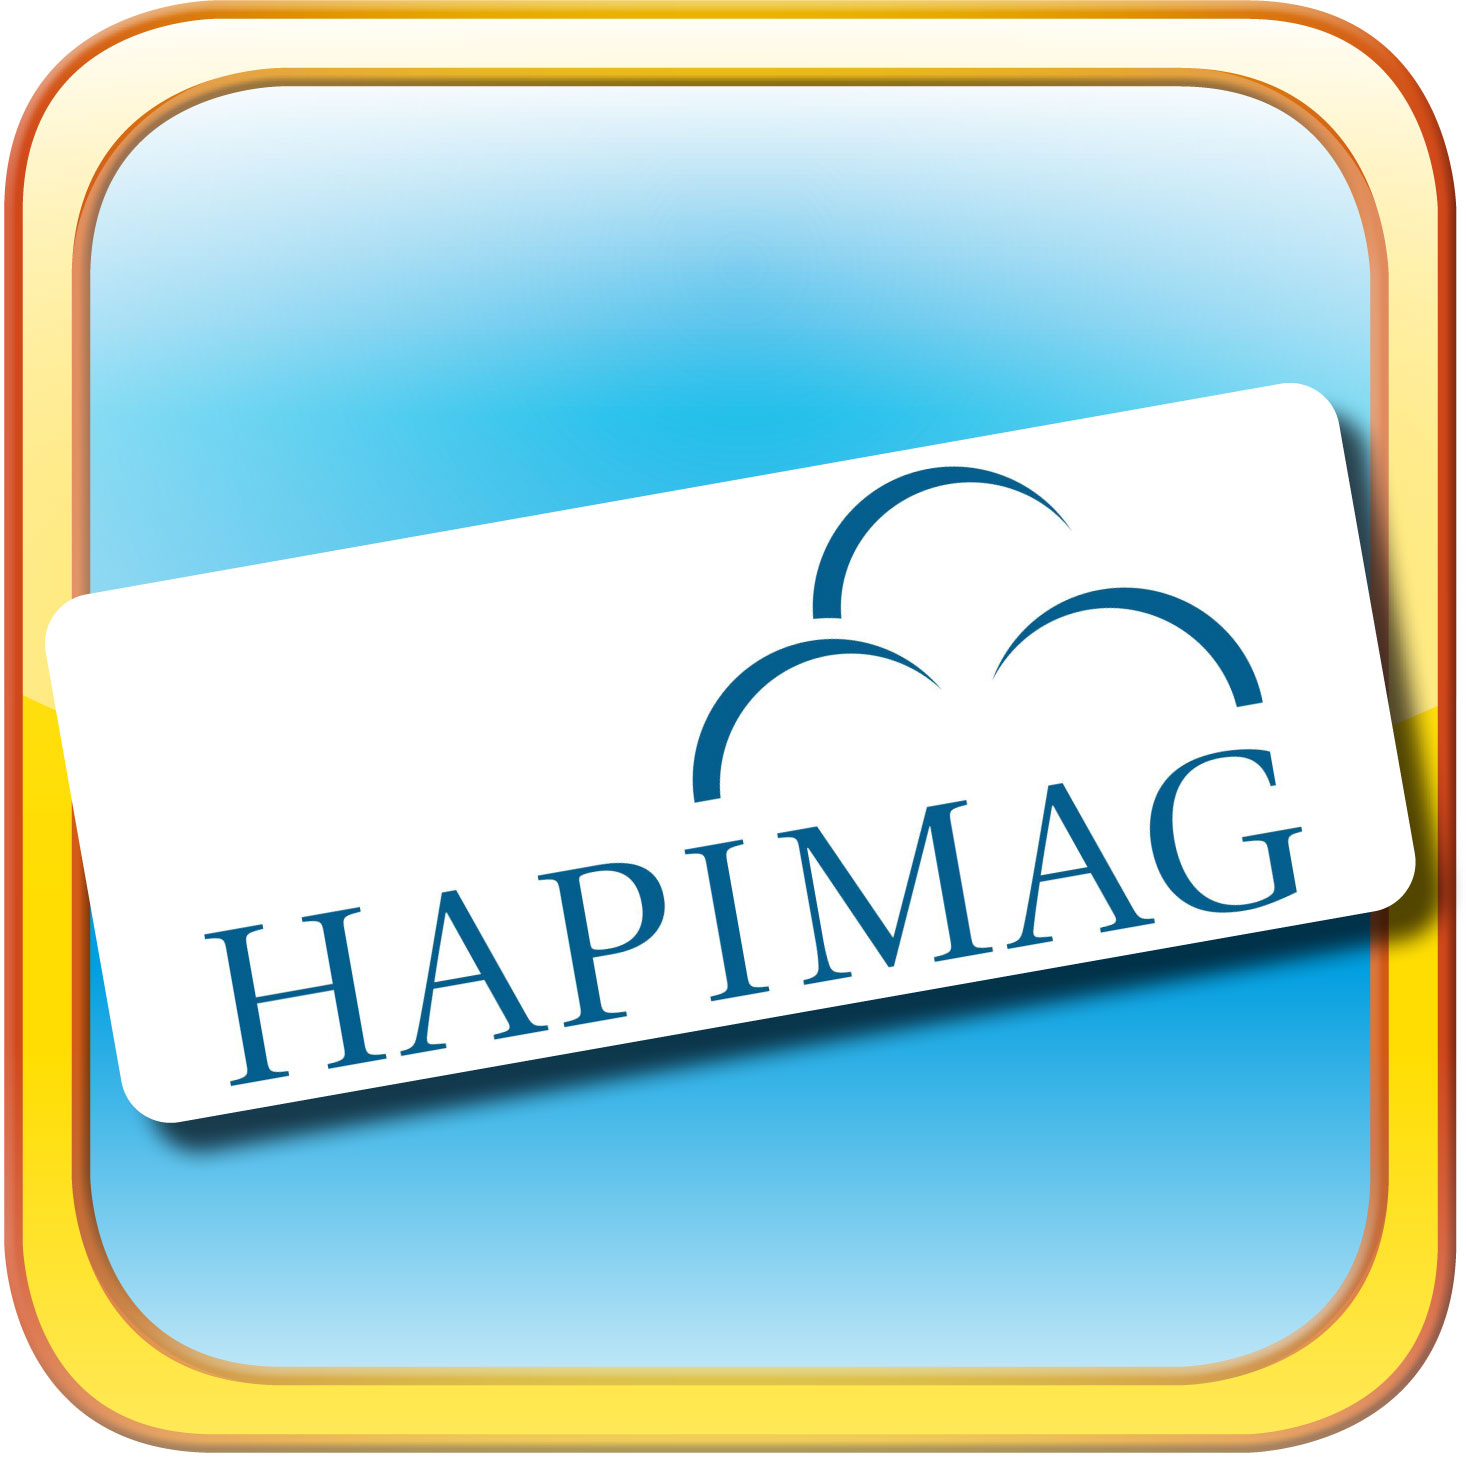 Hapimag unterstützt das Beltane Parkvolleyball-Turnier in Cham Zug | Hapimag und das Beltane Volleyball-Turnier